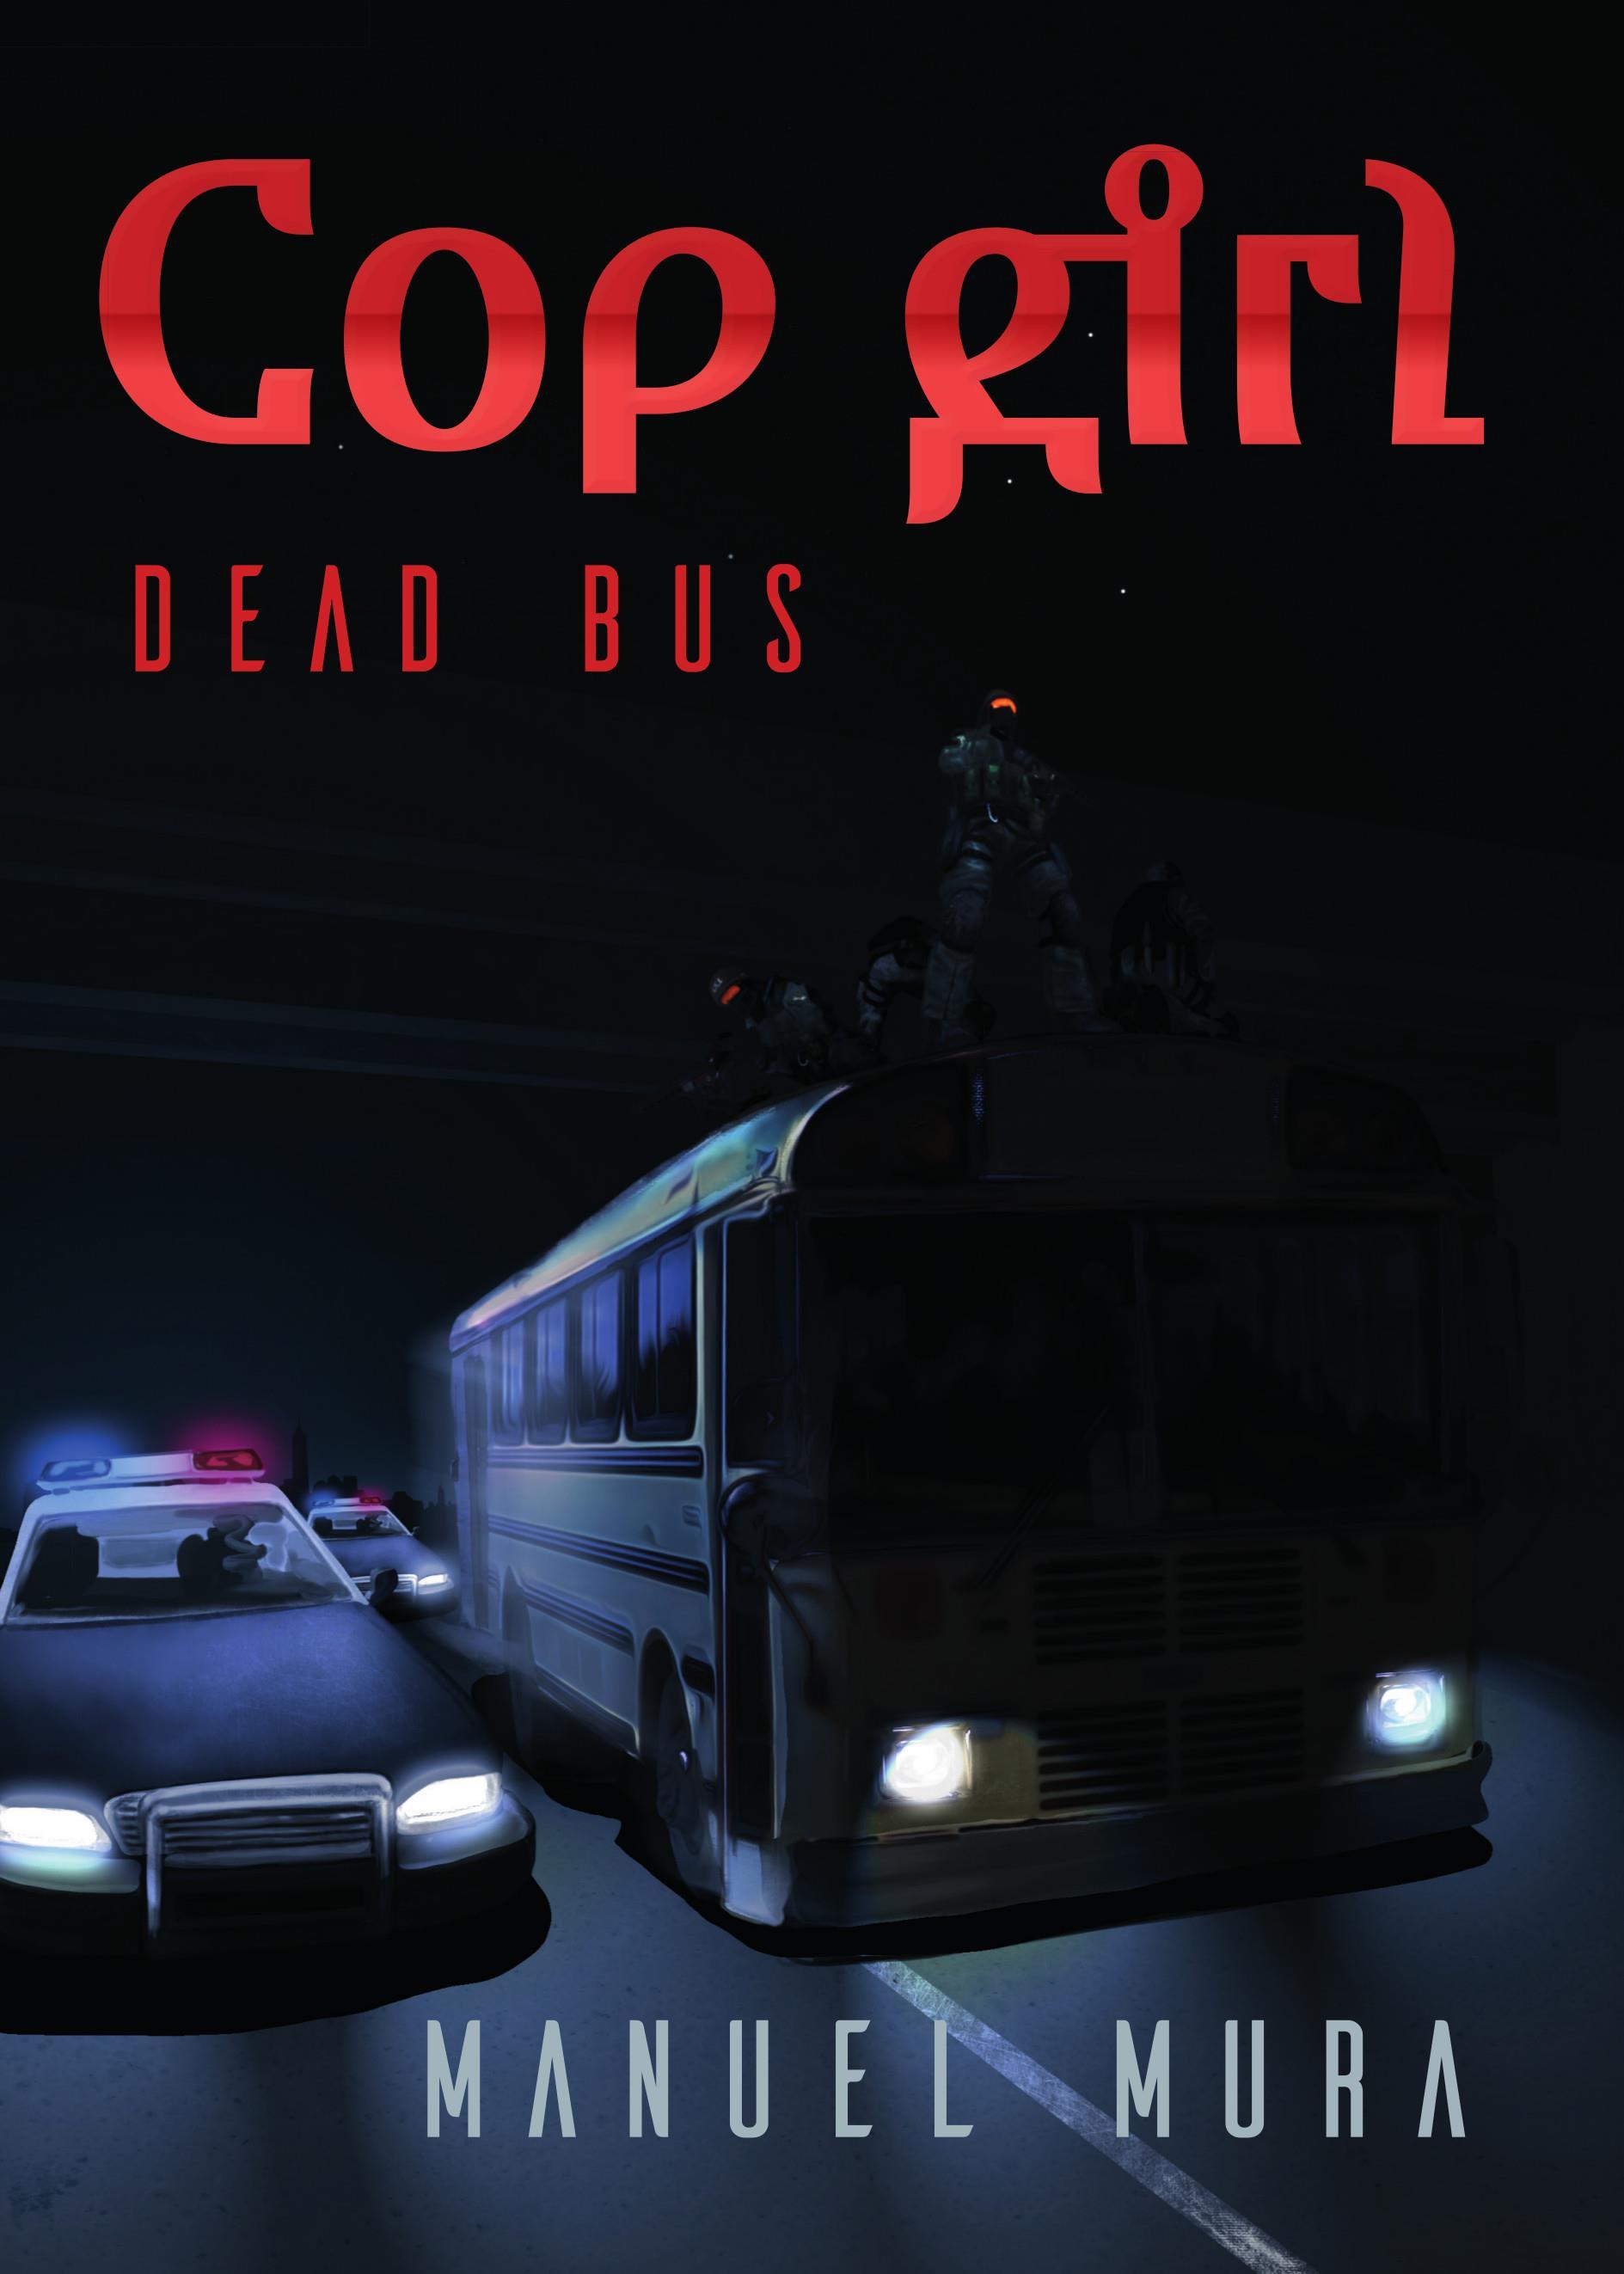 Cop girl - Dead bus